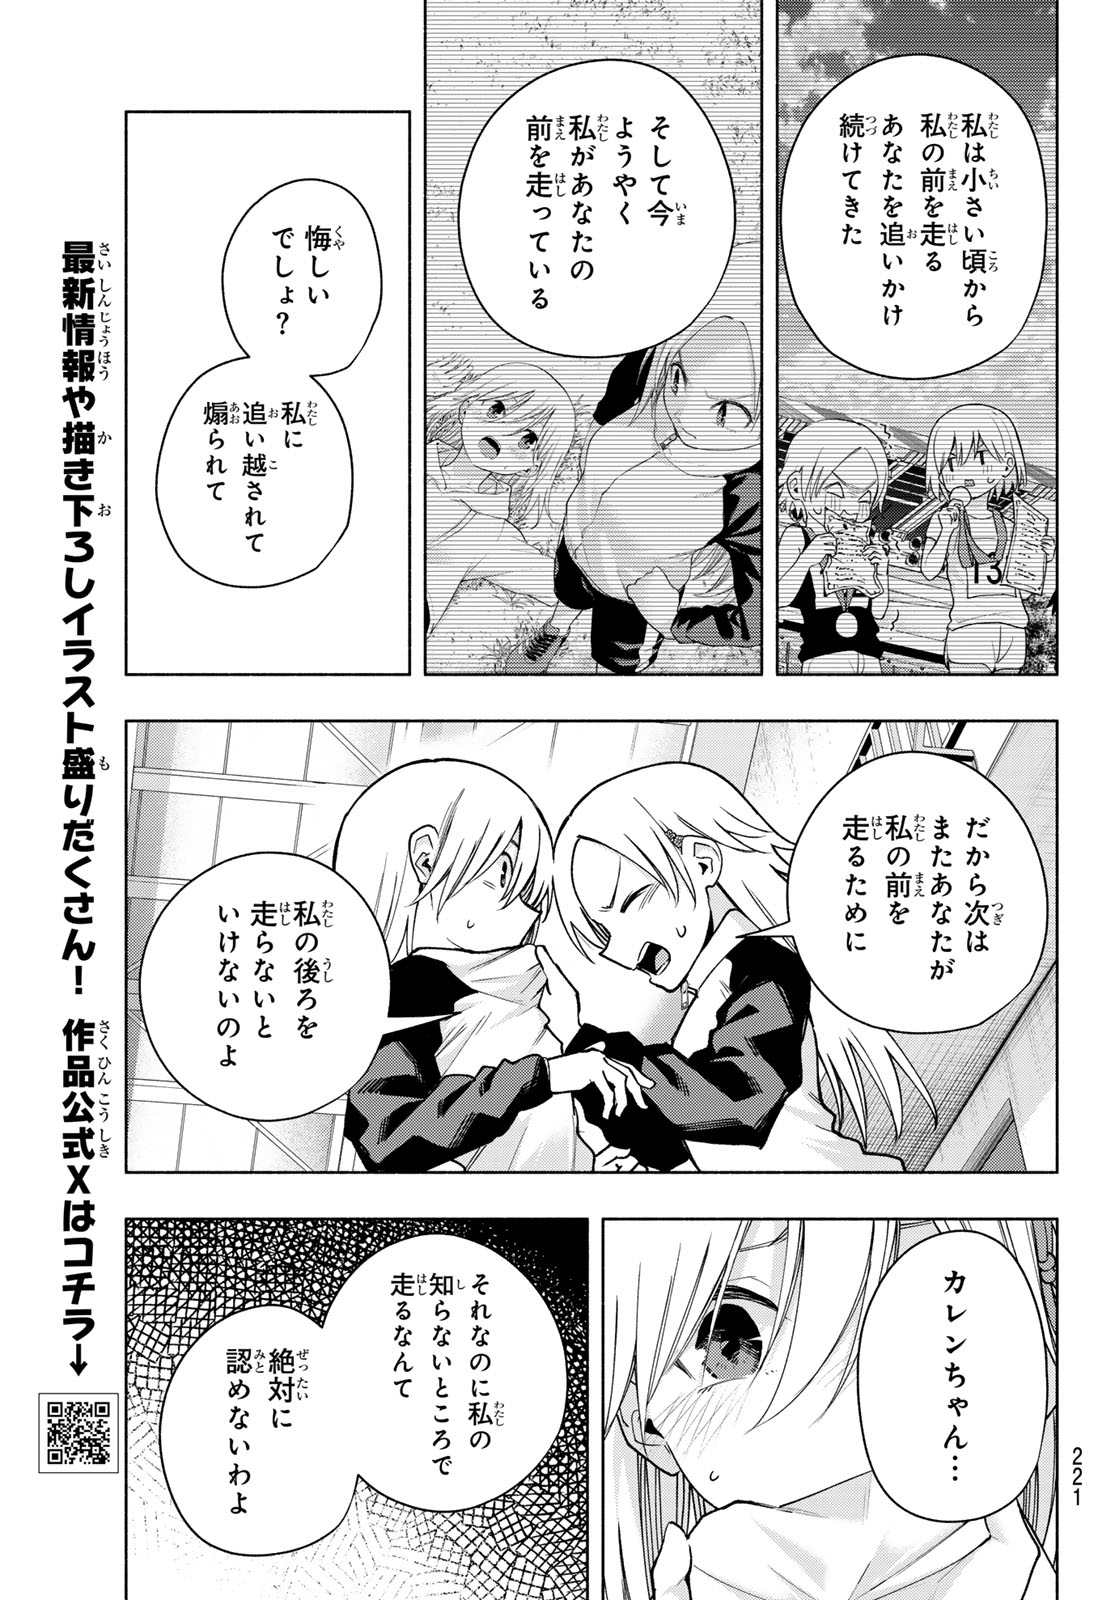 Amagami-san Chi no Enmusubi - Chapter 143 - Page 11